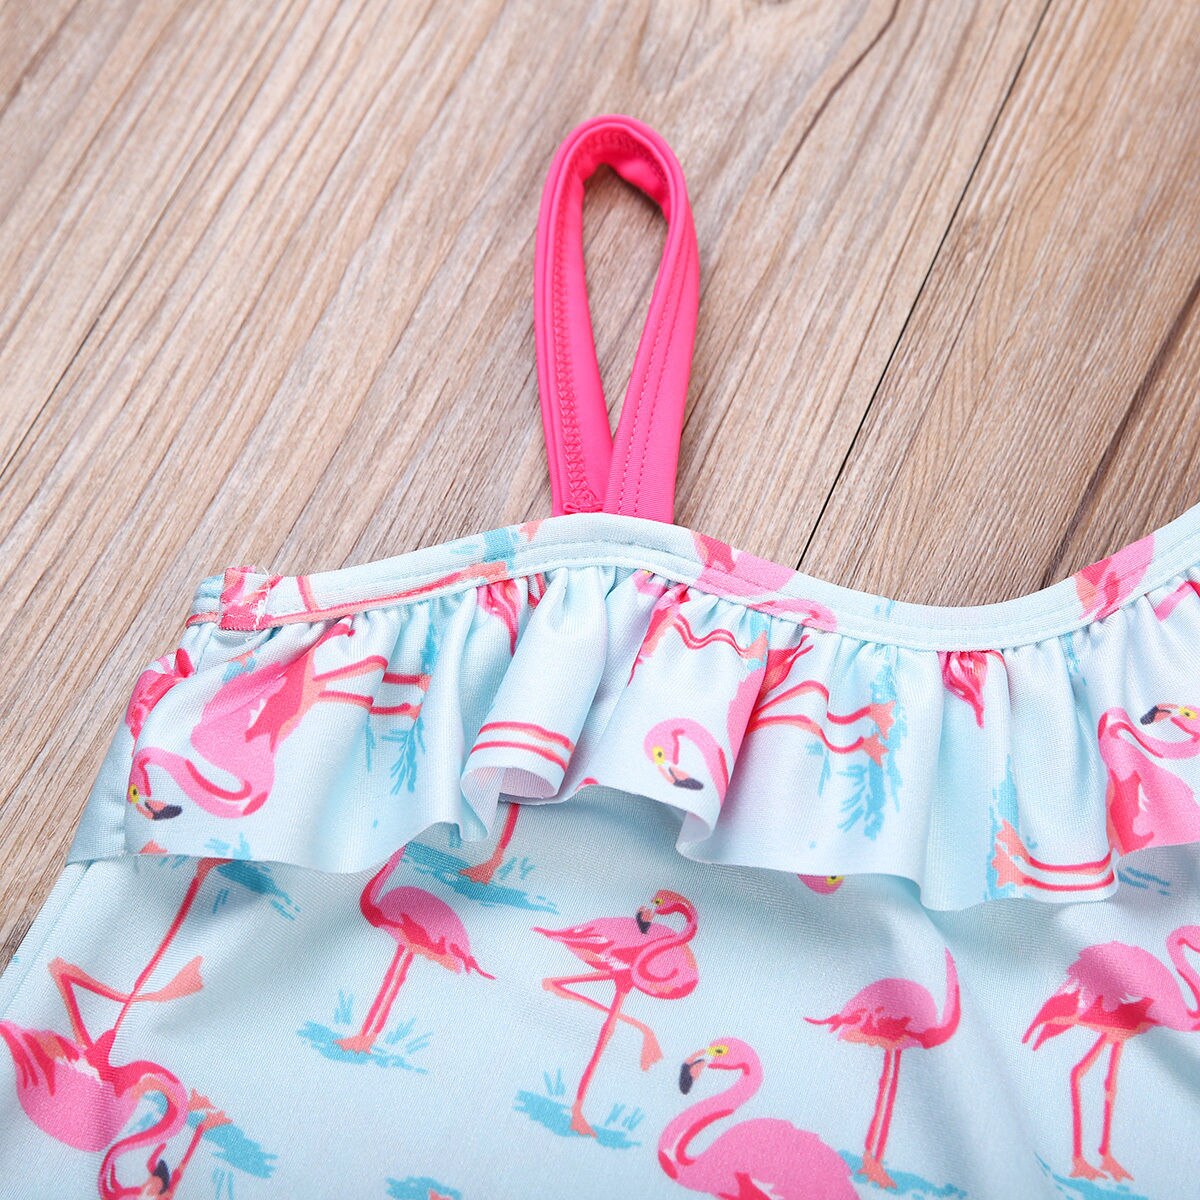 Baby piger kid flamingo badedragt badedragt badedragt ét stykke badetøj bikini sæt svømning badning strand badetøj